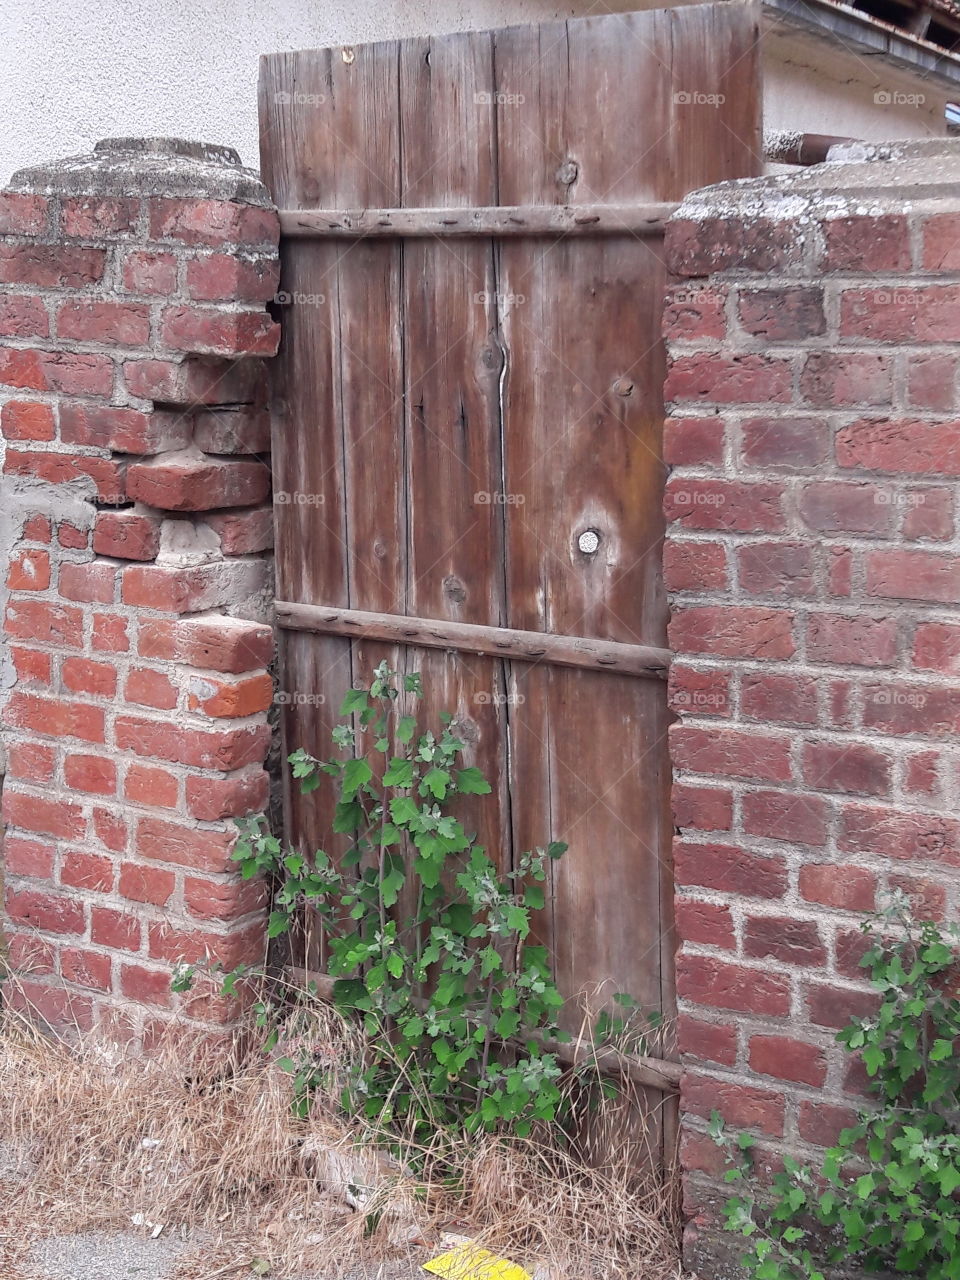 Abandoned gate